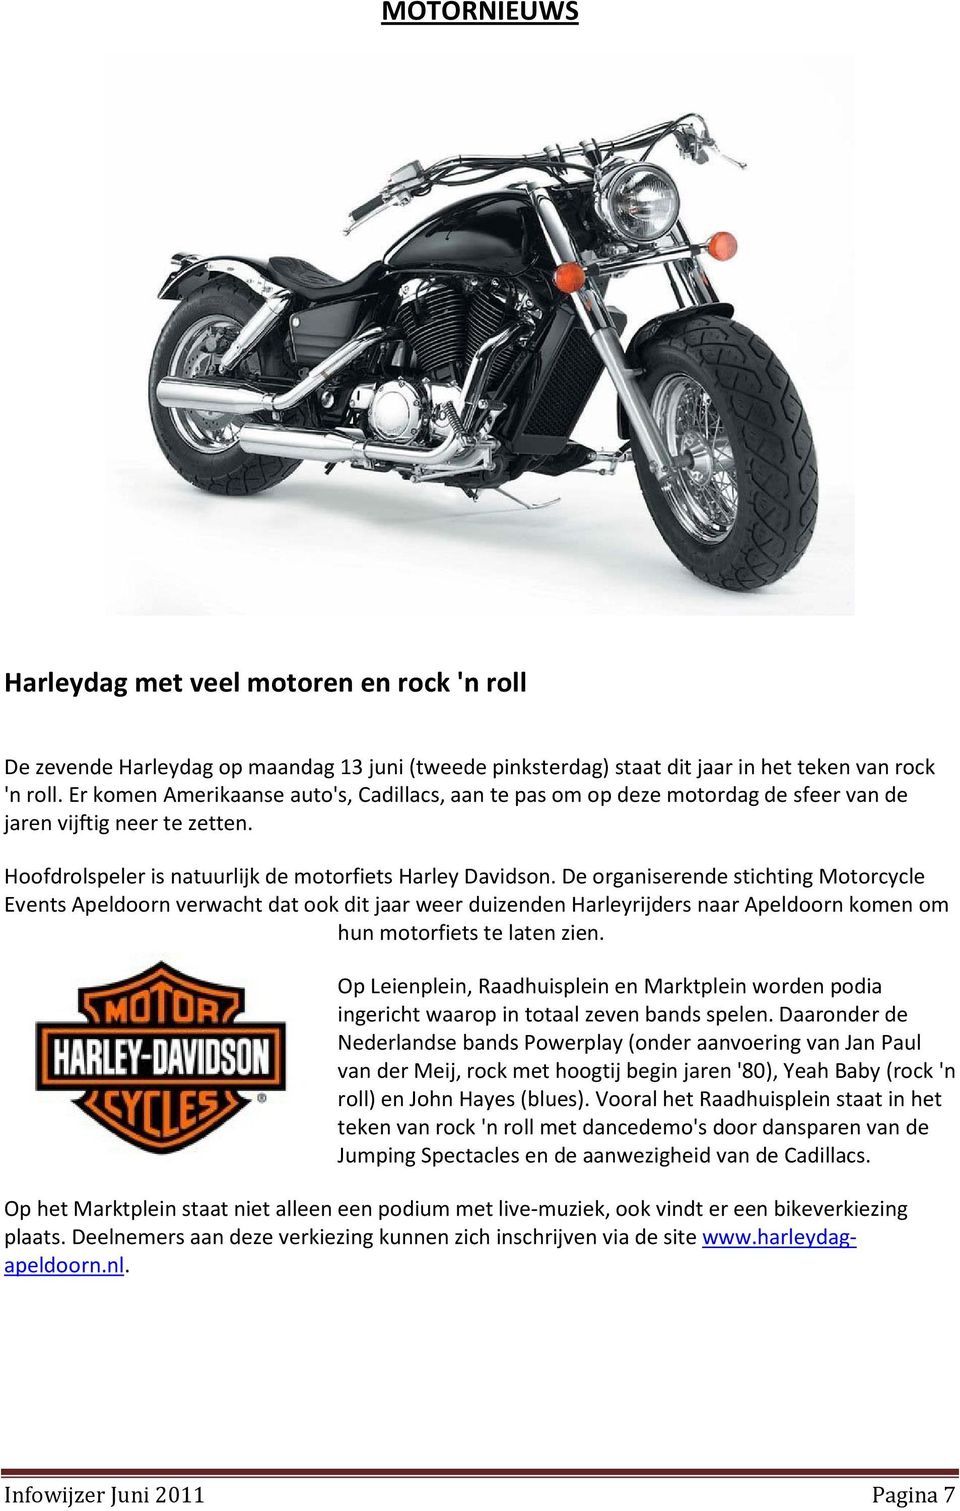 De organiserende stichting Motorcycle Events Apeldoorn verwacht dat ook dit jaar weer duizenden Harleyrijders naar Apeldoorn komen om hun motorfiets te laten zien.